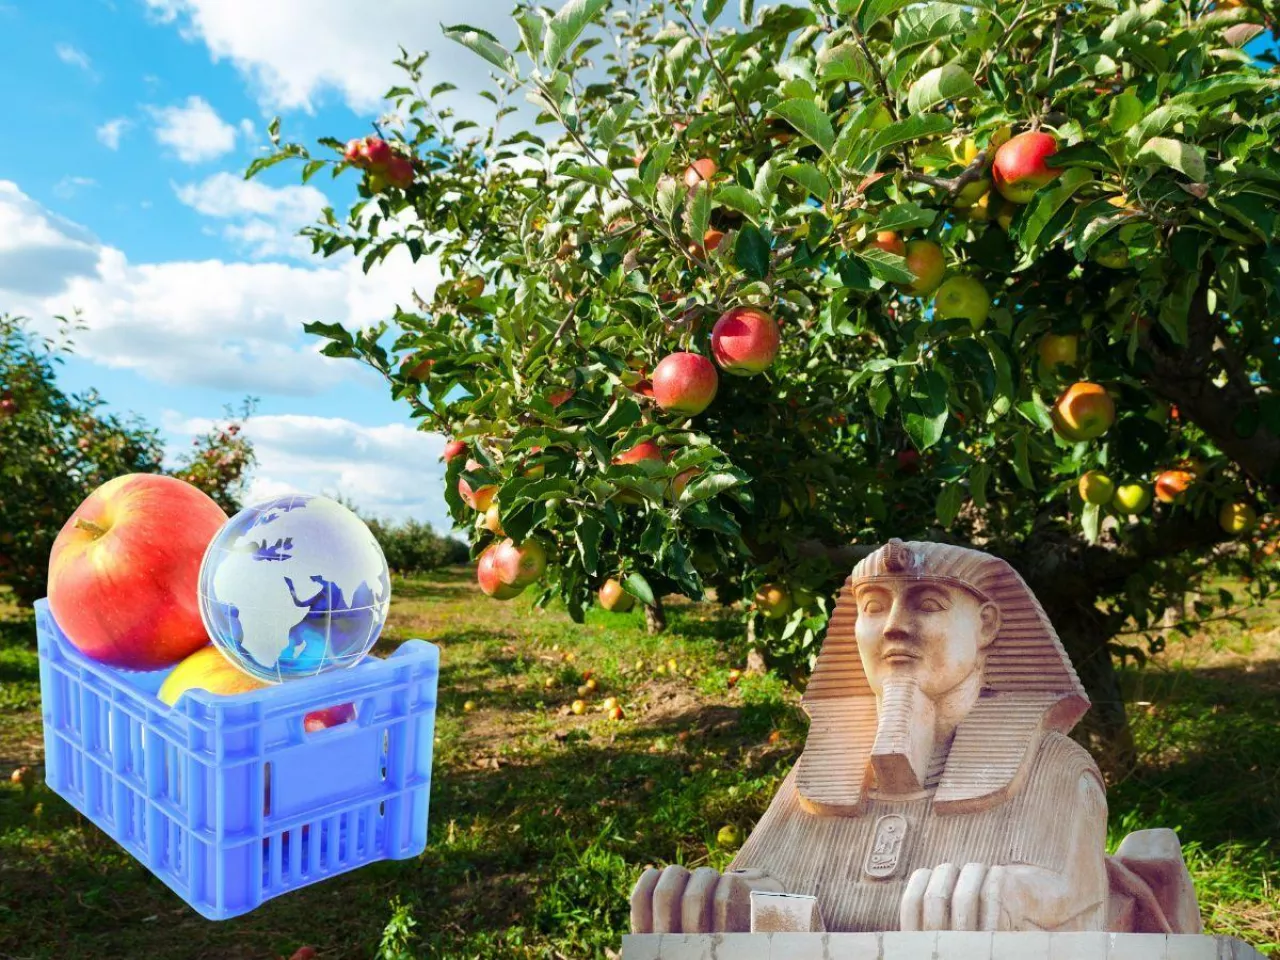 Sadowników czeka kolejny dramat? Eksport polskich jabłek do Egiptu zagrożony